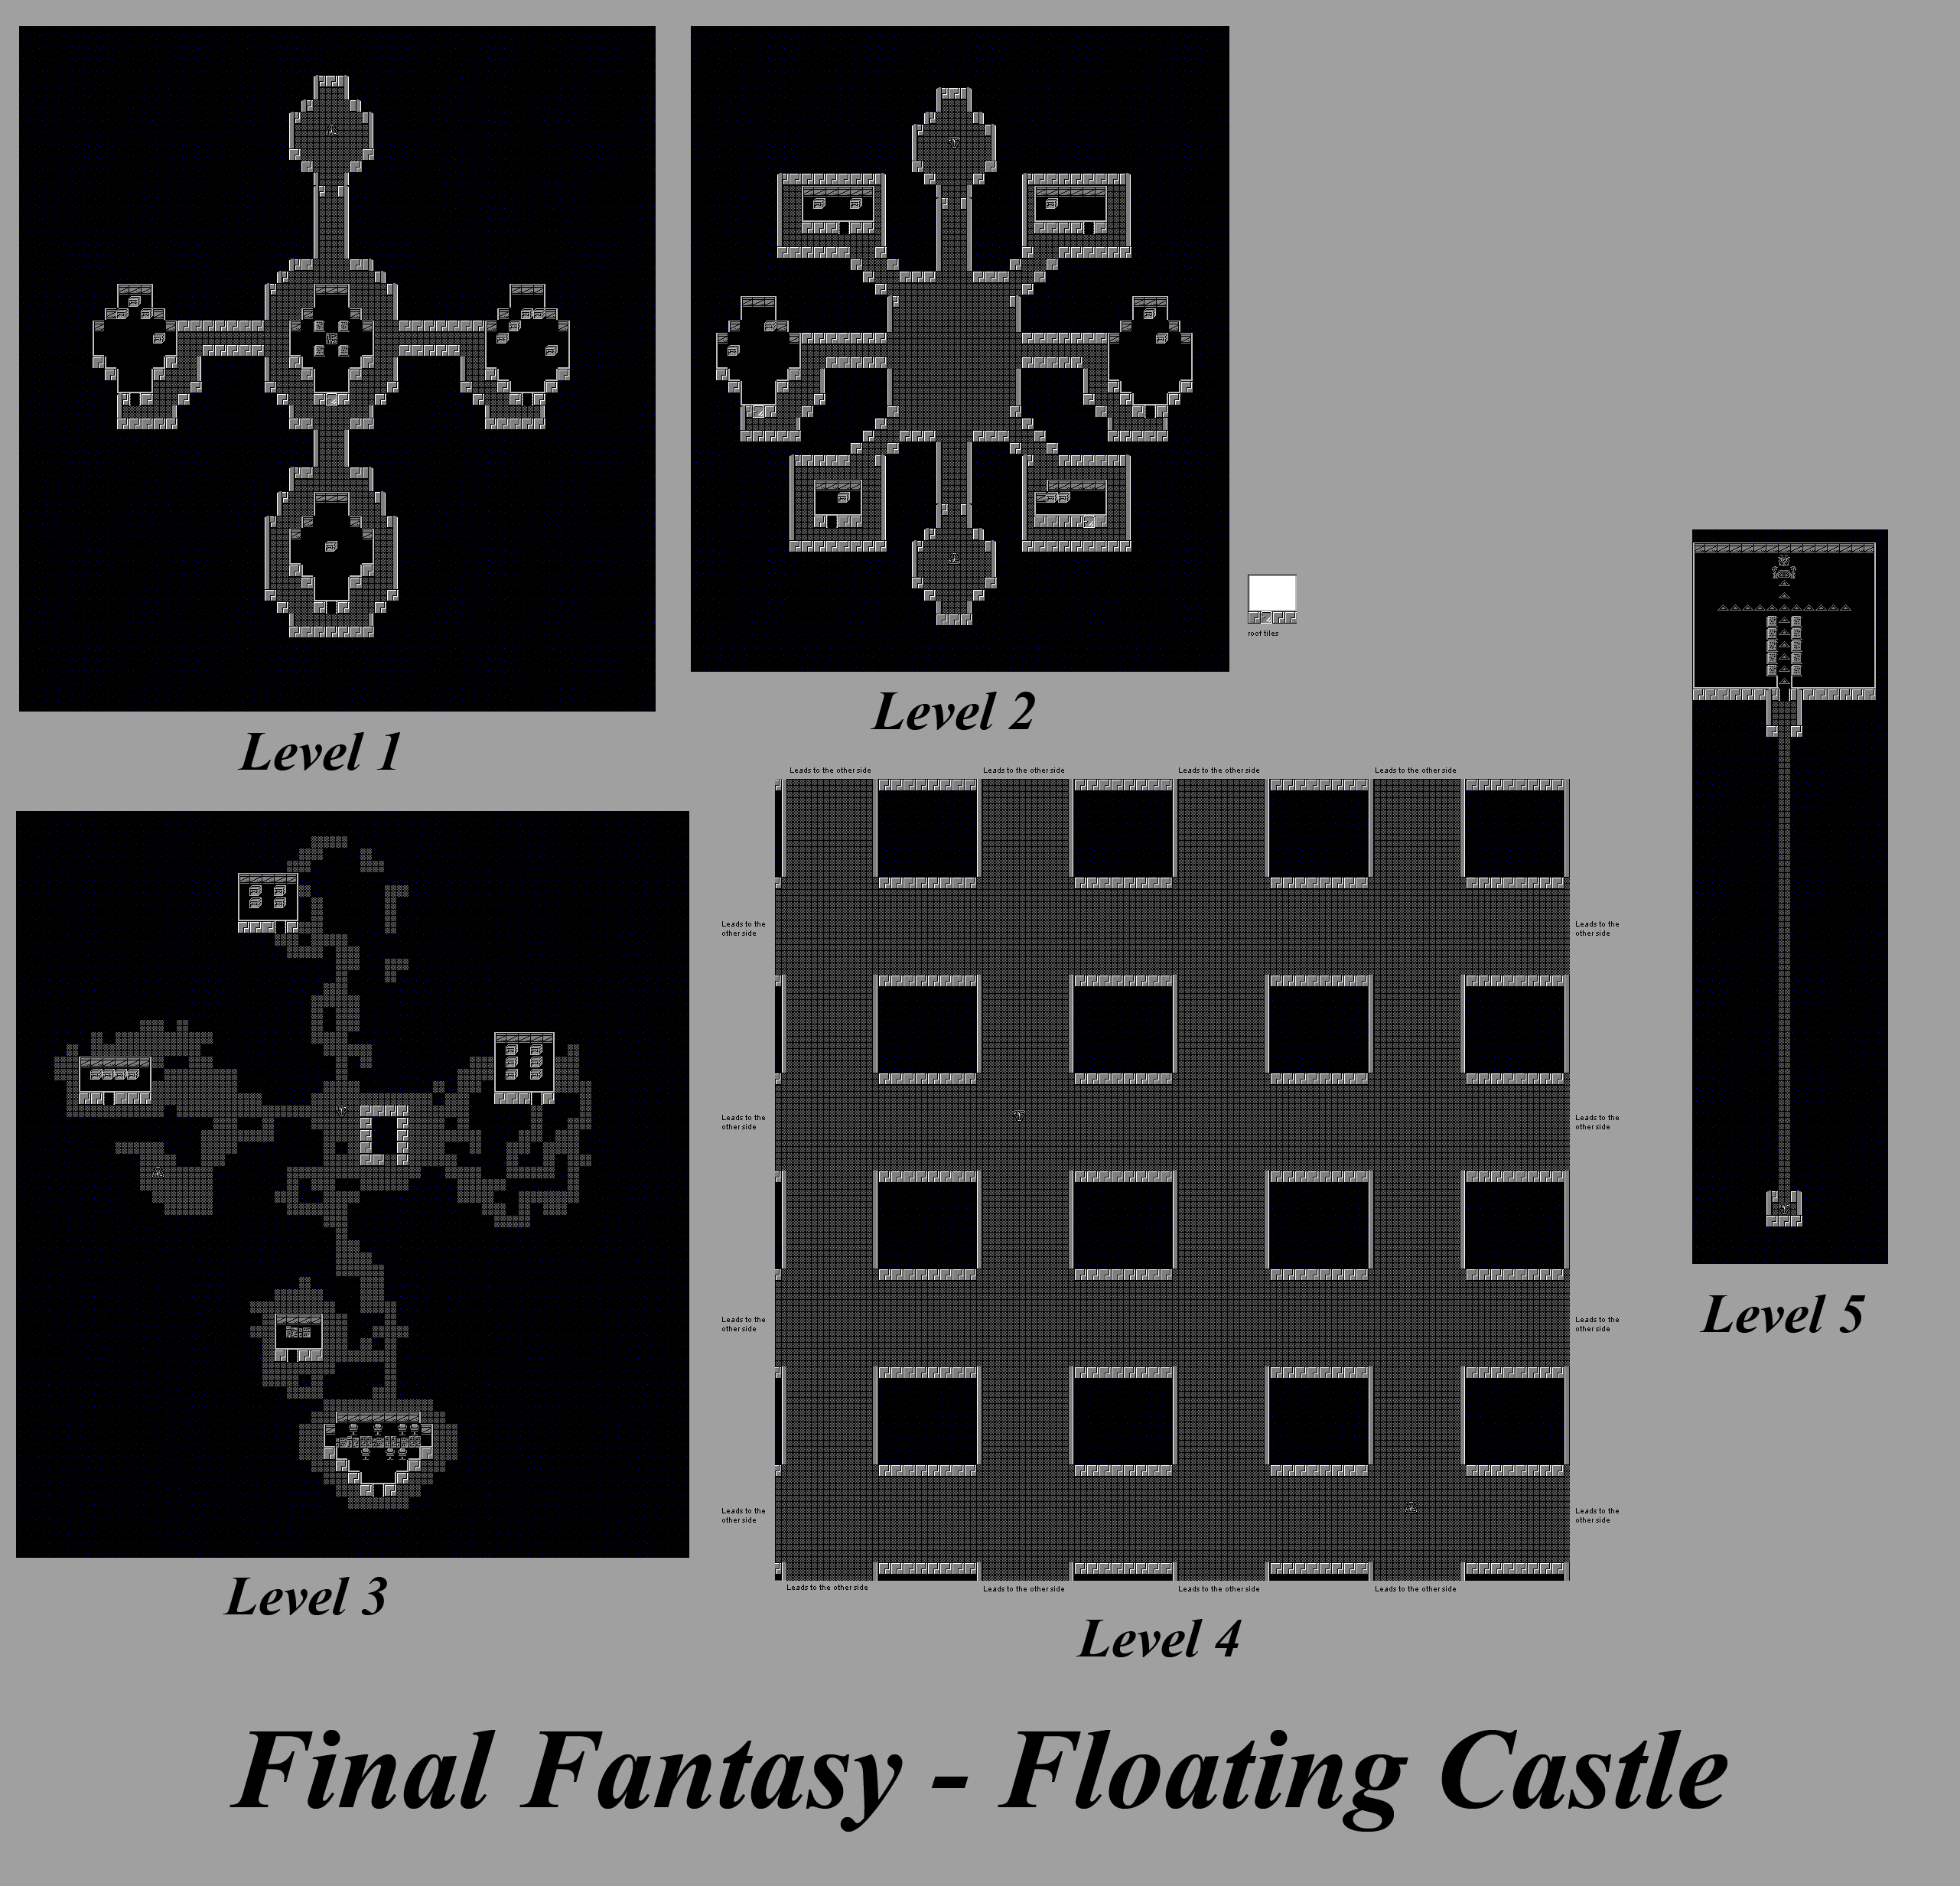 Final Fantasy - Floating Castle